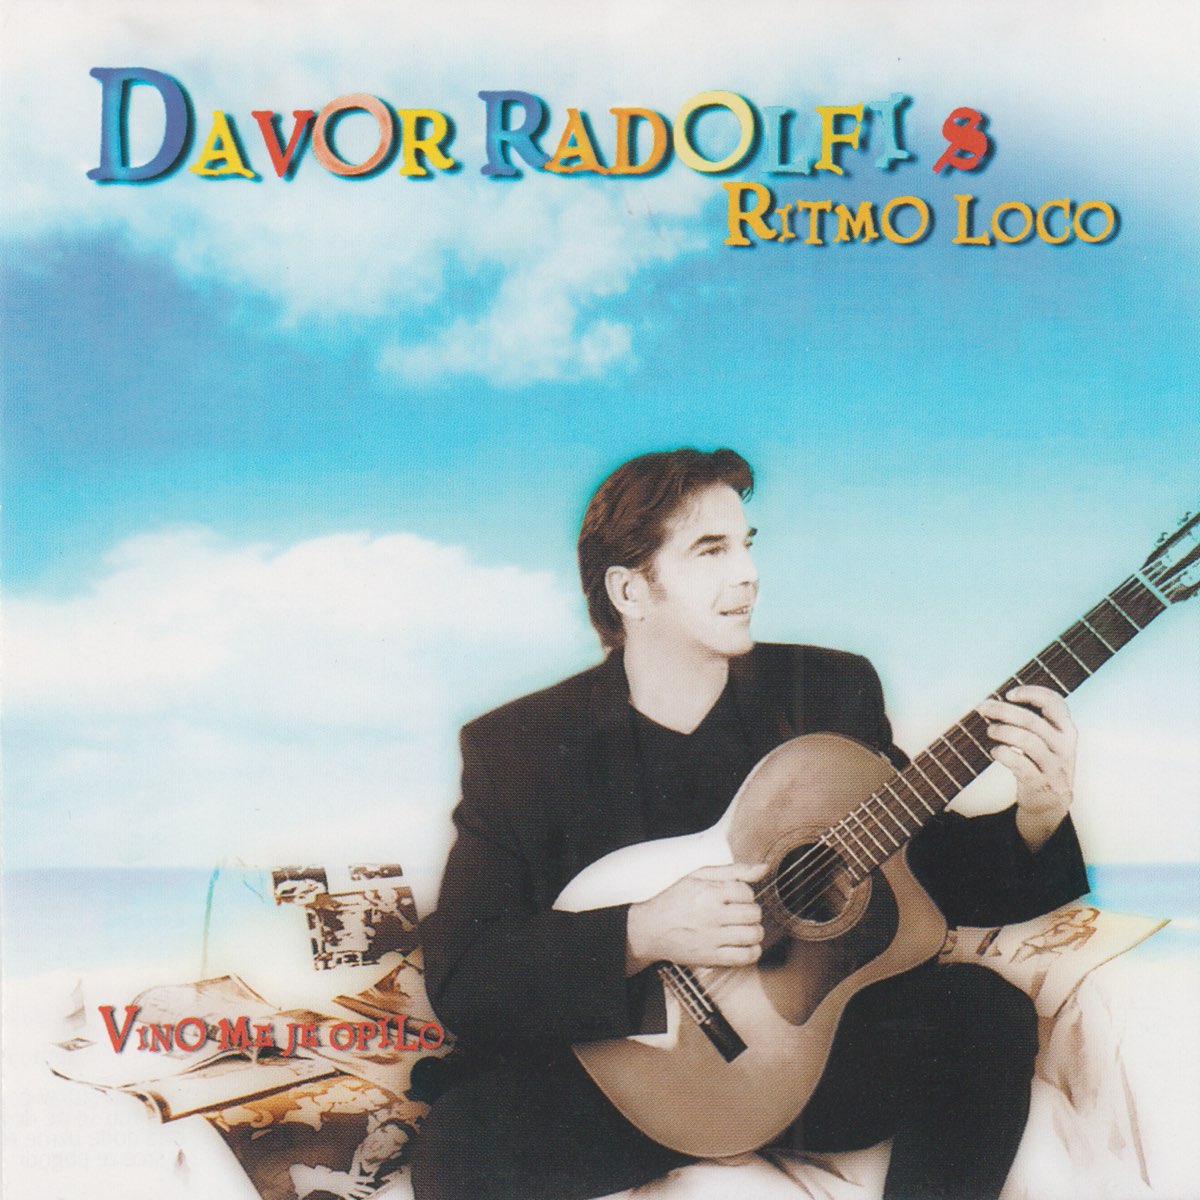 Vino me je opilo - Album by Davor Radolfi & Ritmo Loco - Apple Music